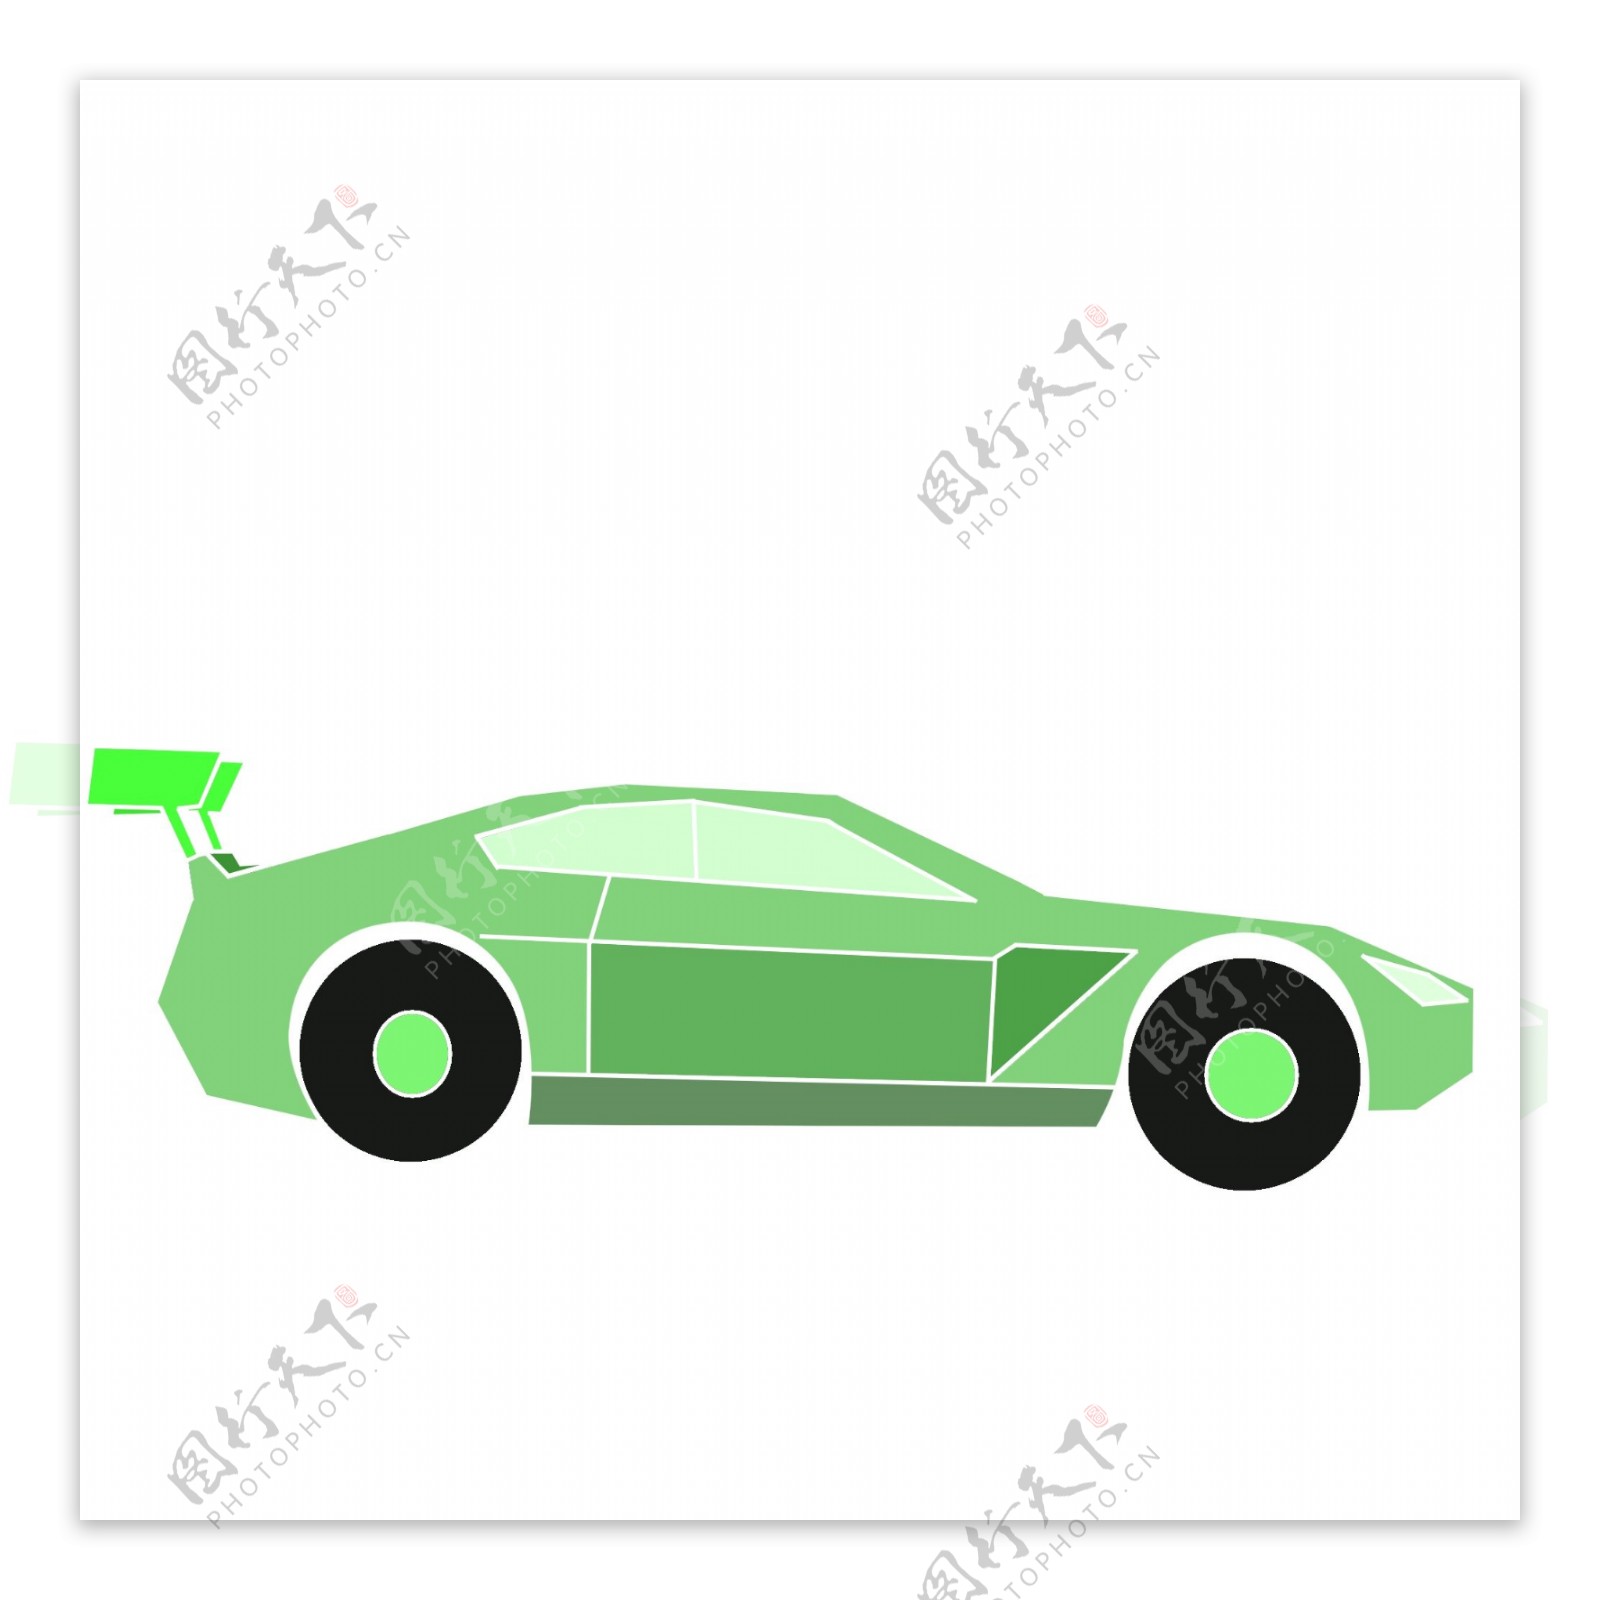 一辆绿色小轿车